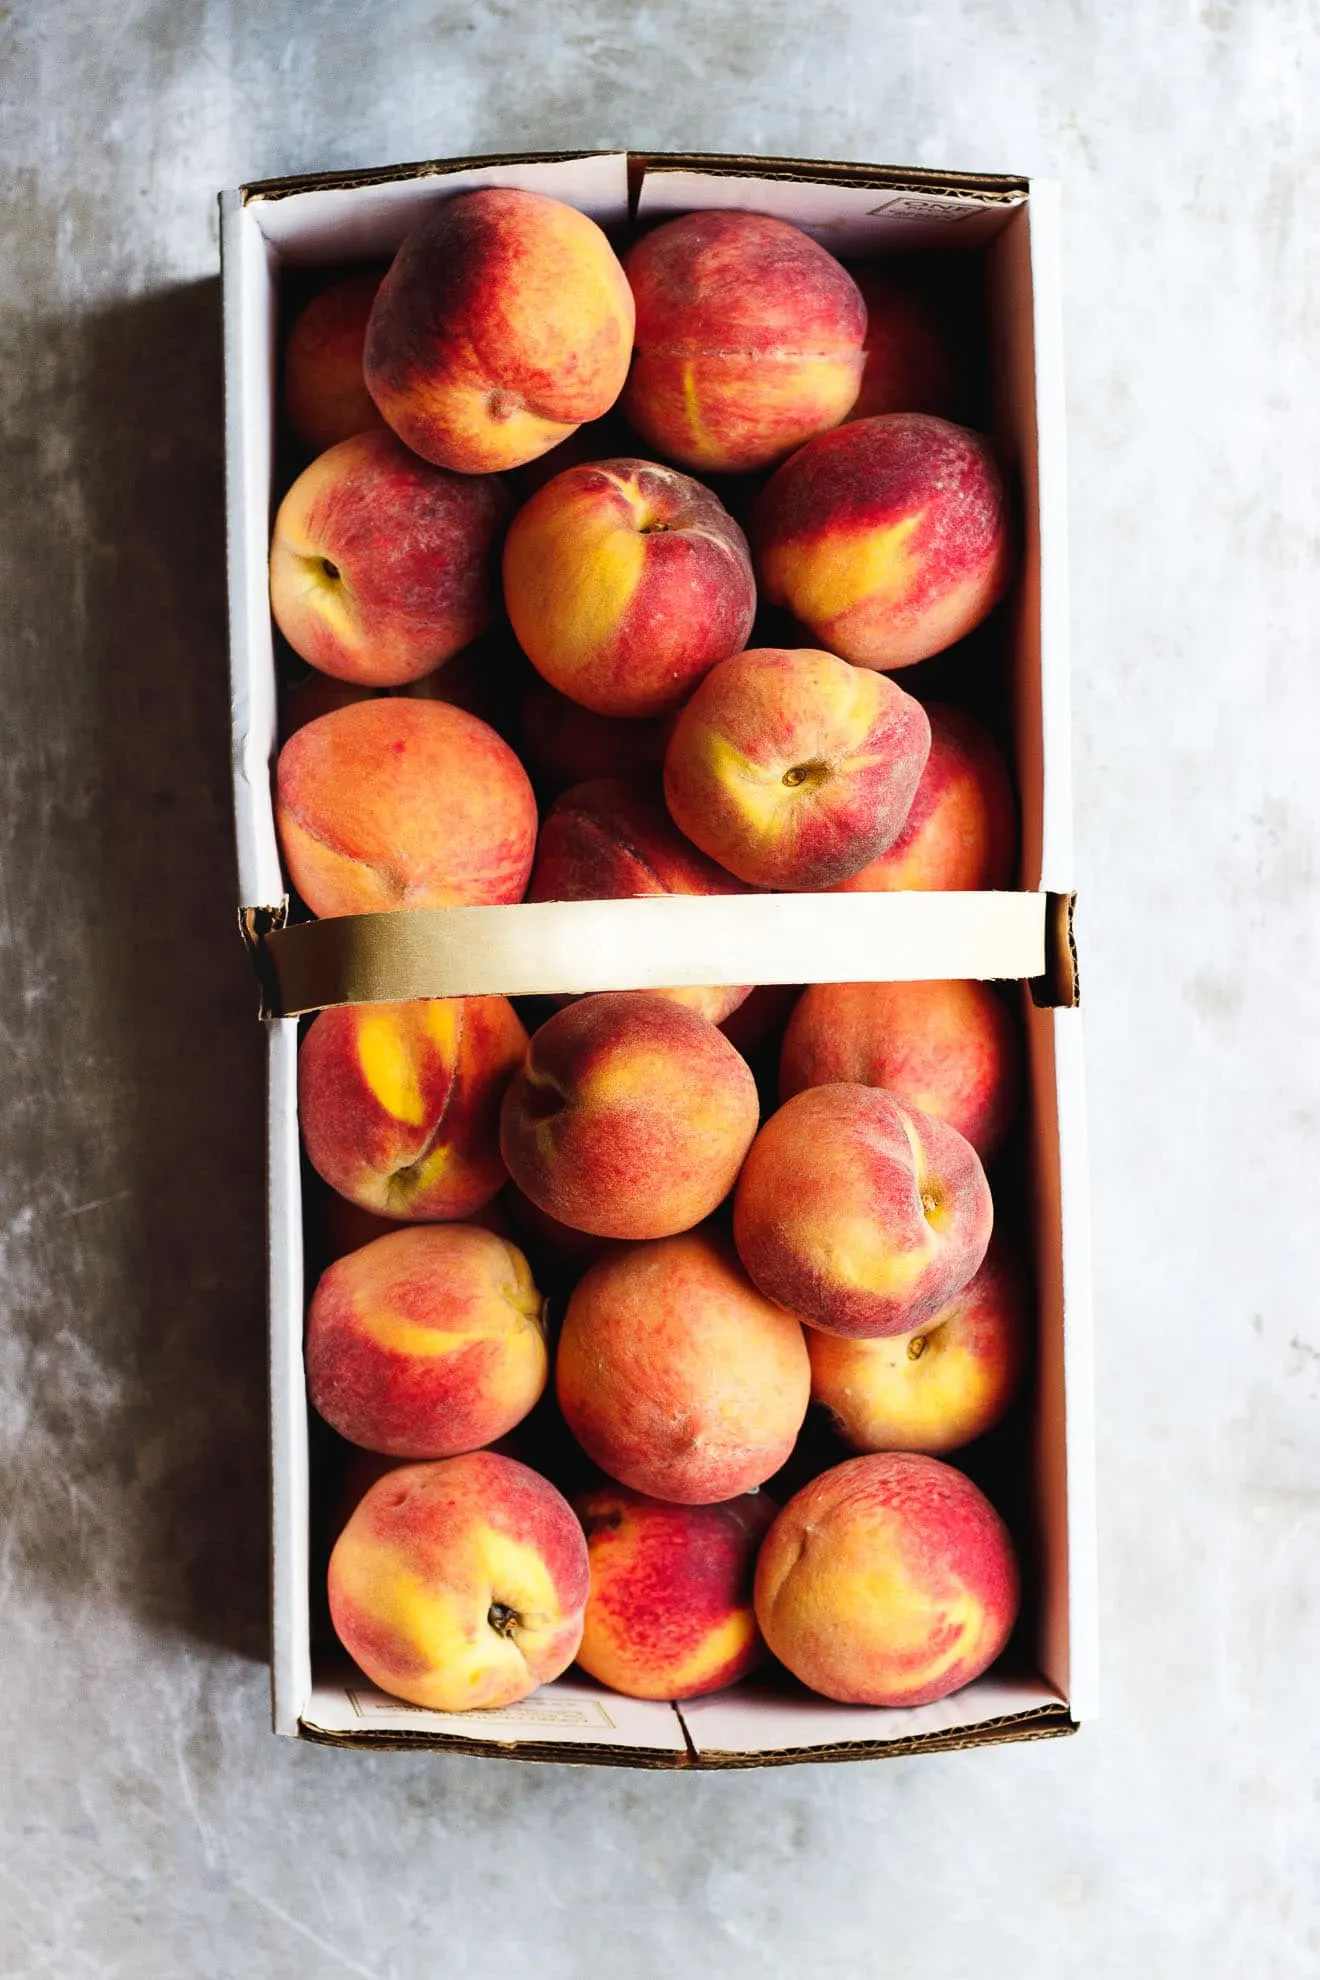 peaches in case